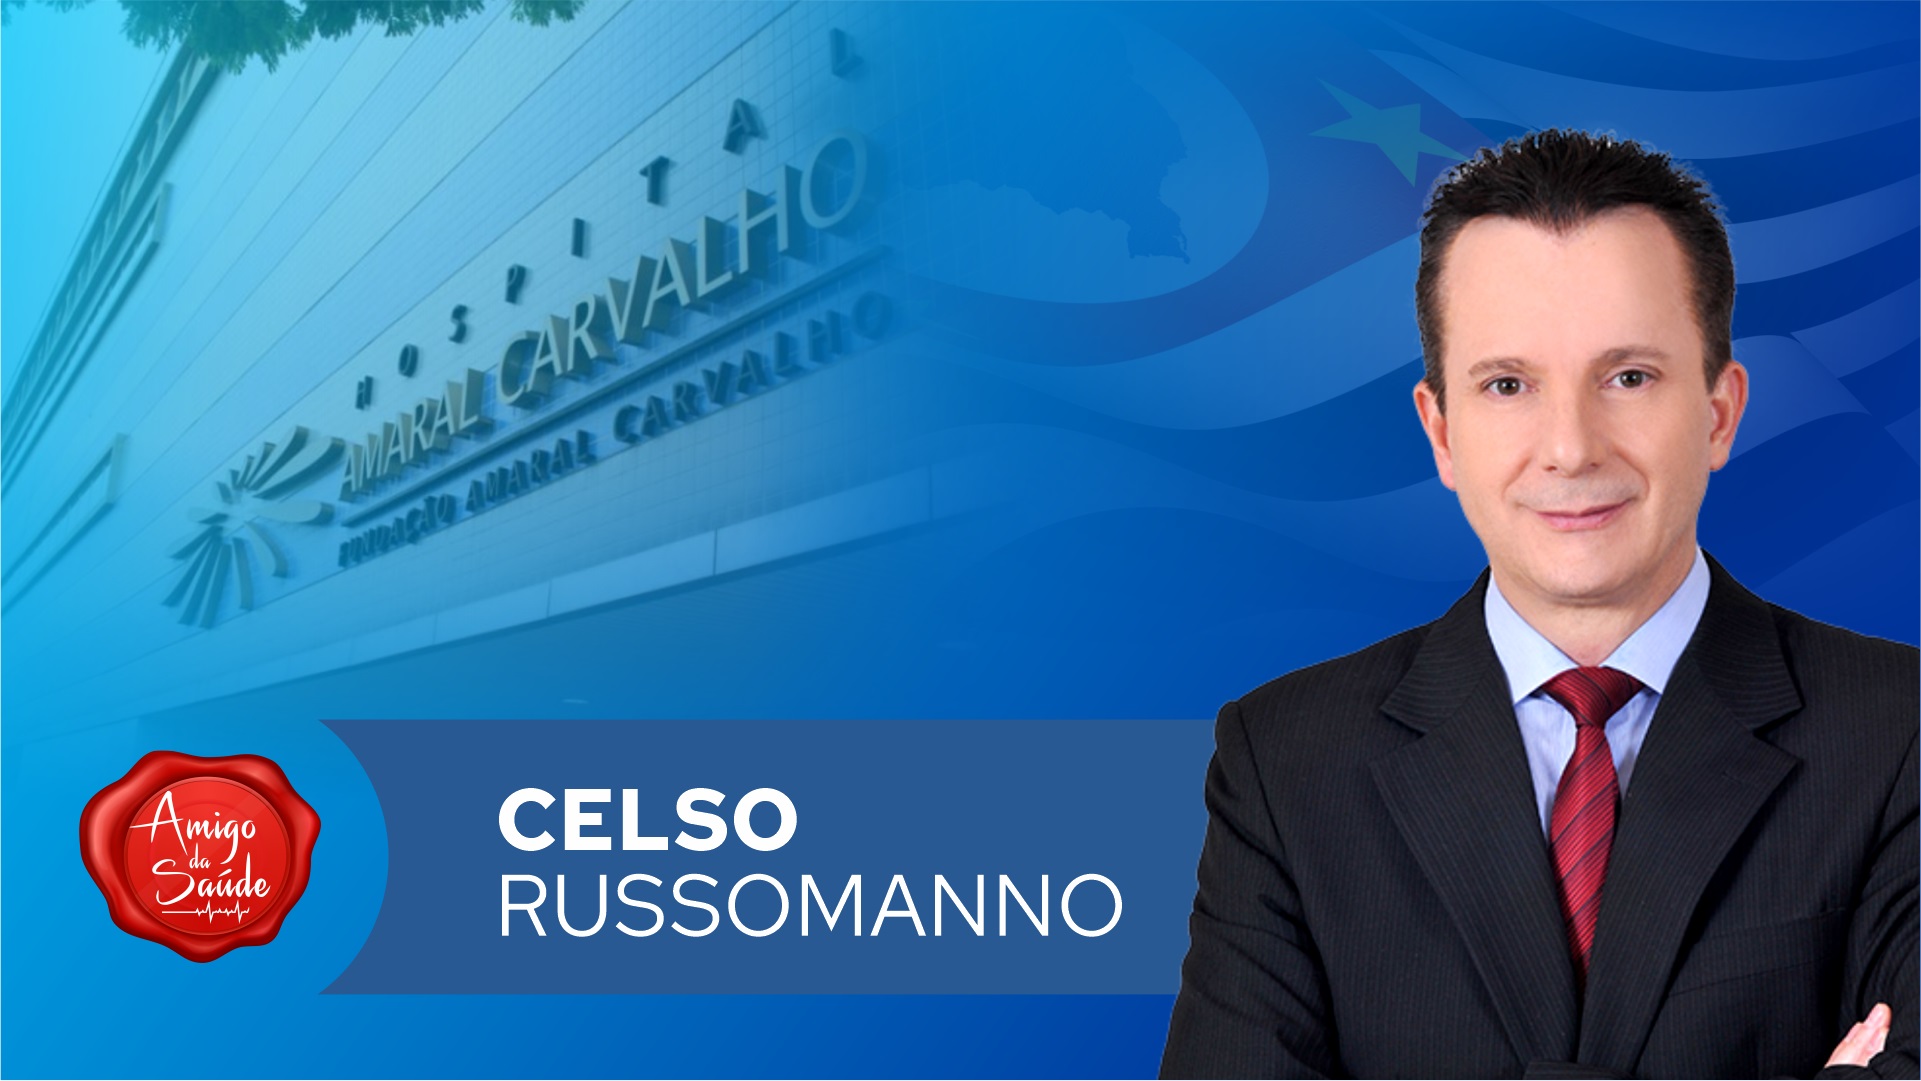 deputado-celso-russomanno-apoia-o-hospital-amaral-carvalho - Acao Comunicativa